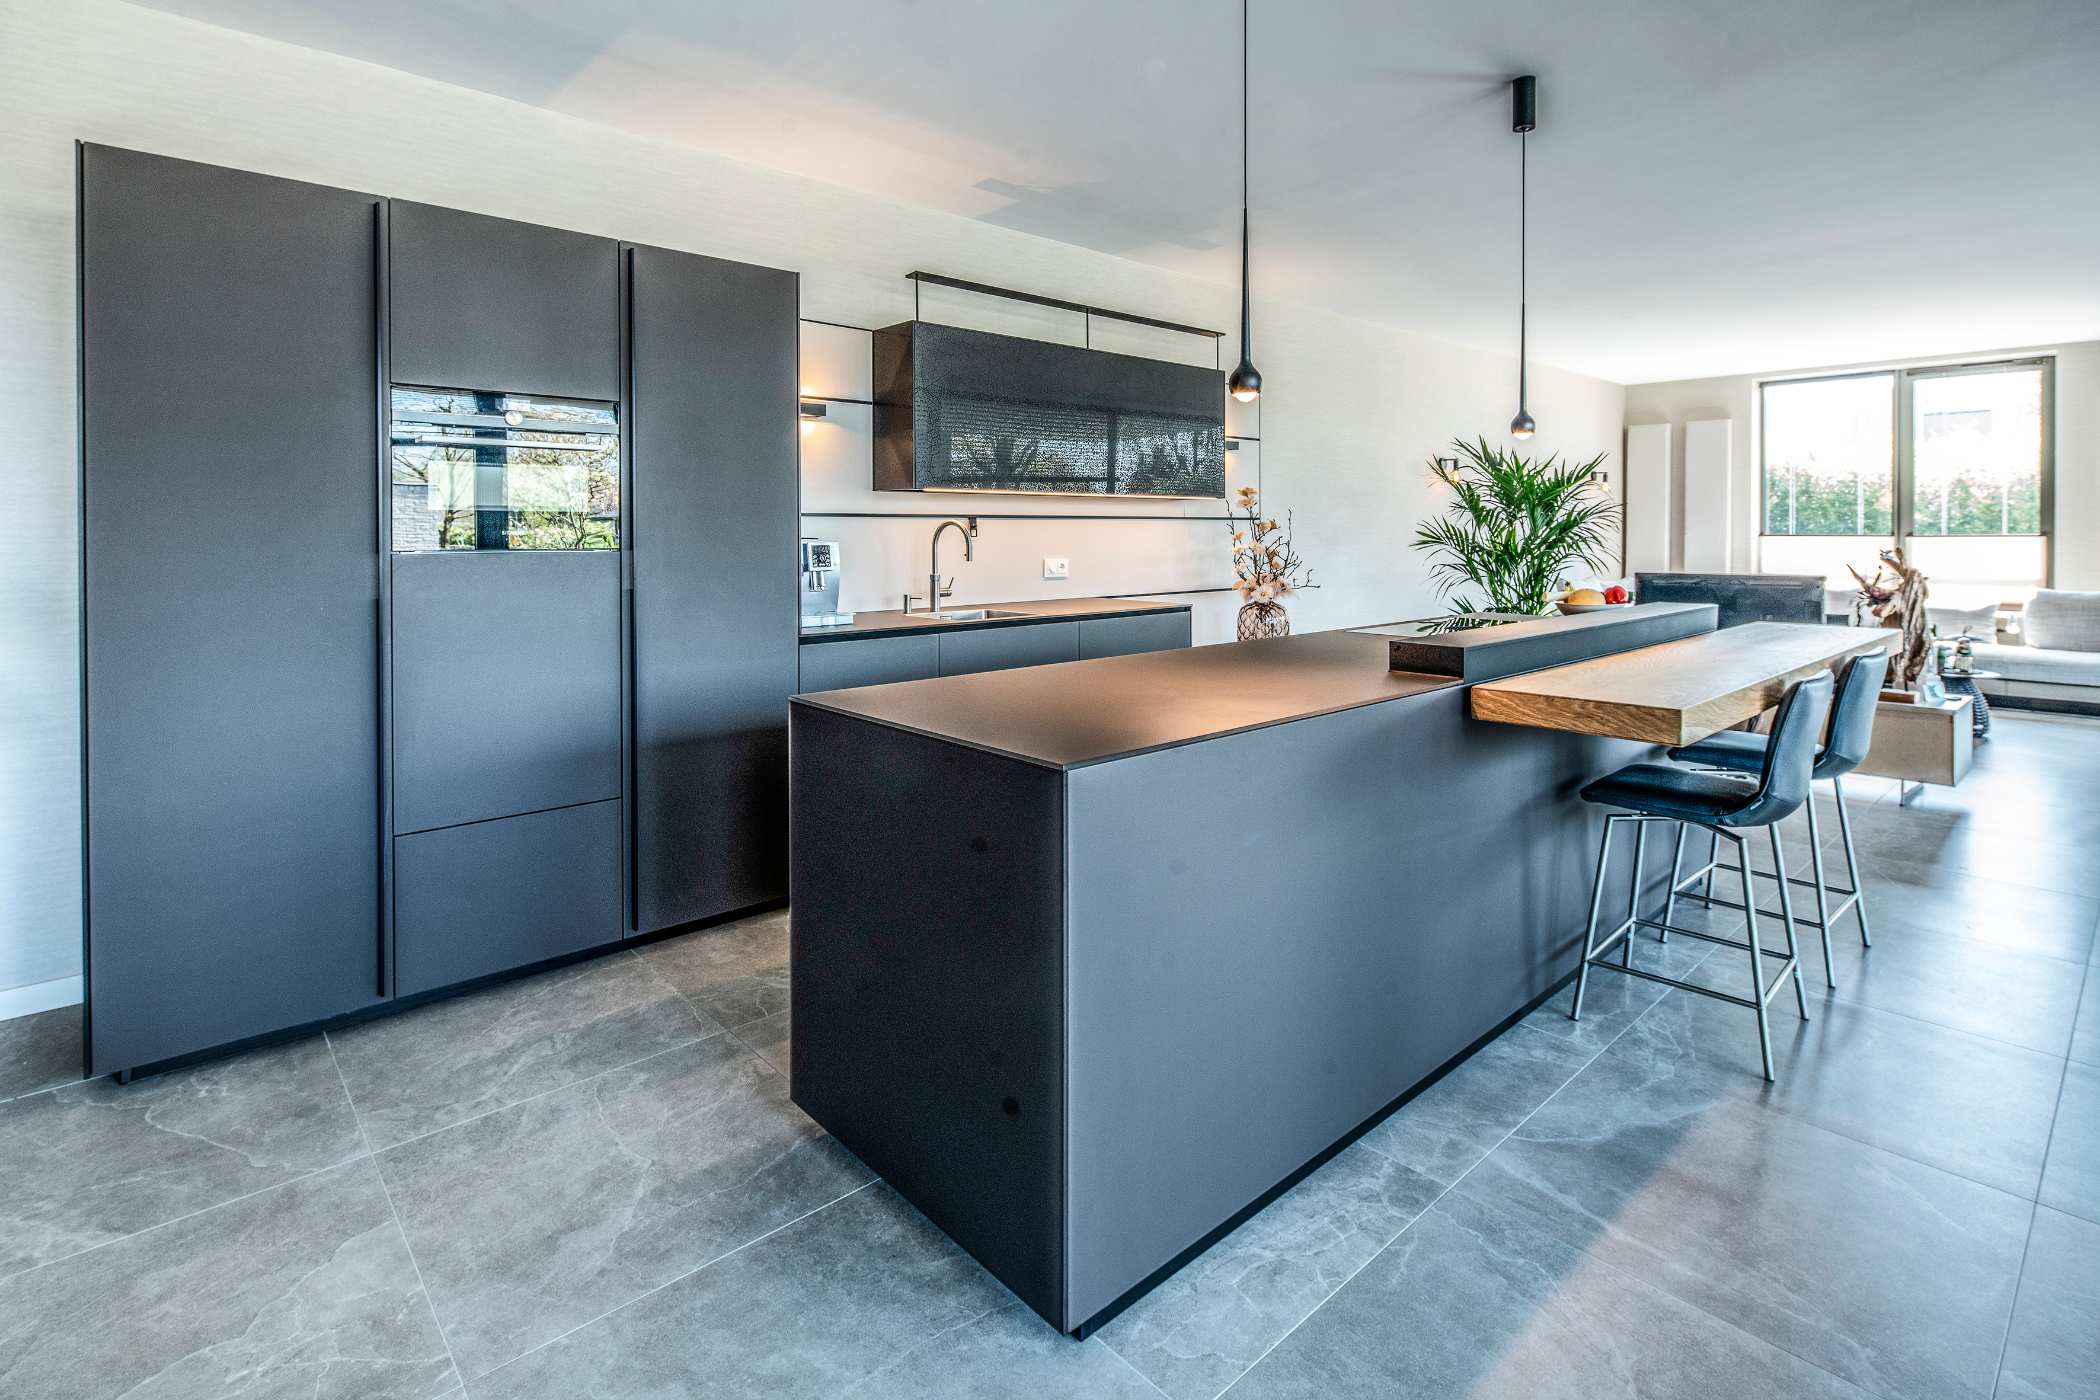 Nieuwbouwappartement Breda met glazen vacucine keuken